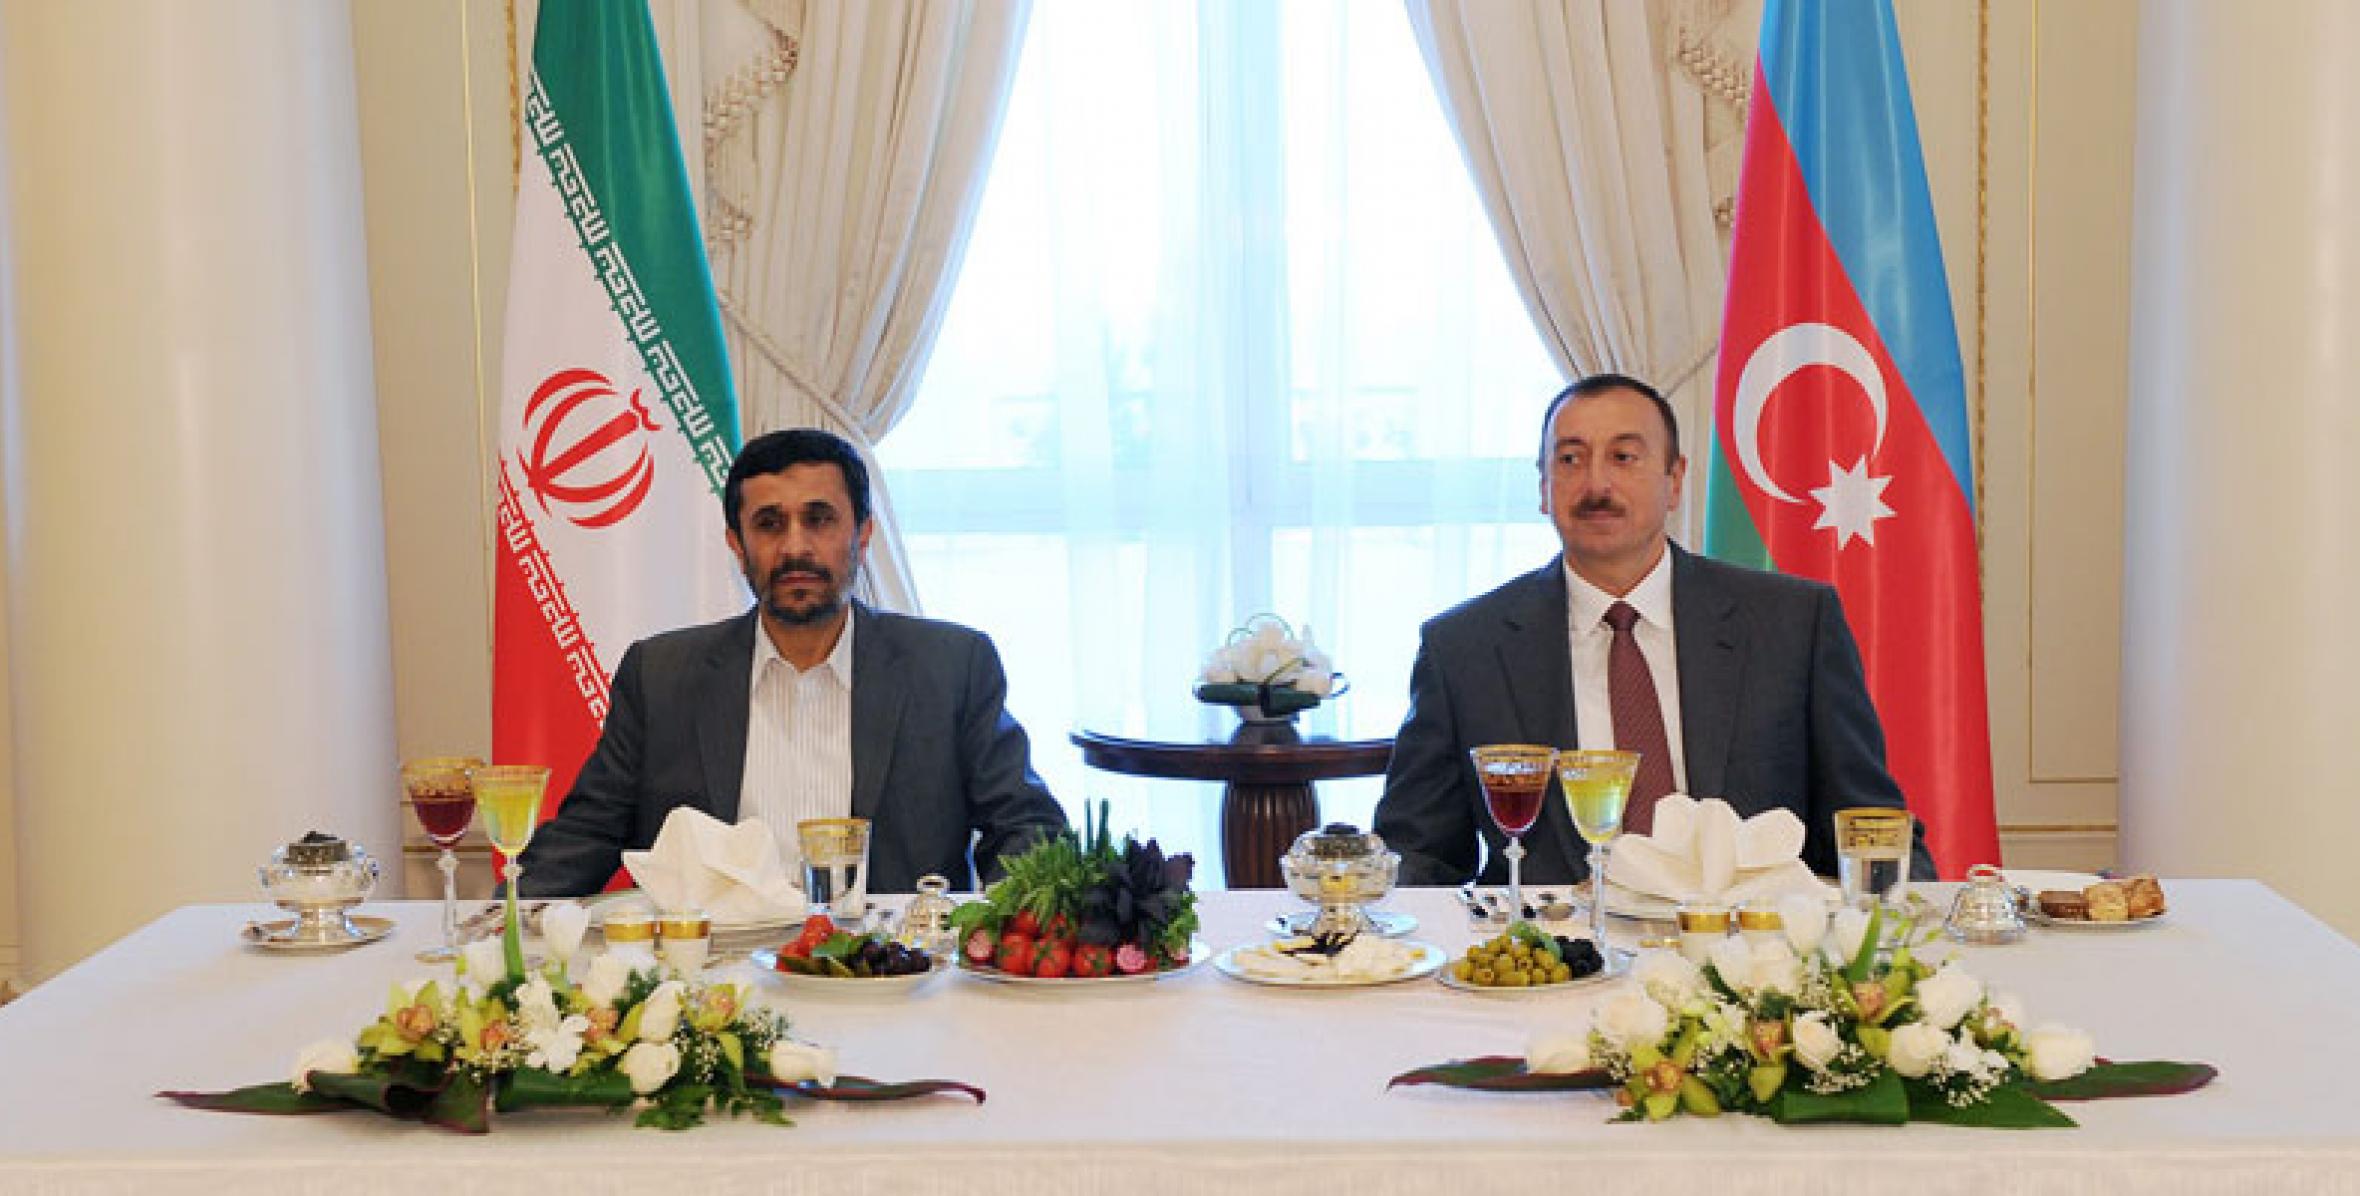 От имени Ильхама Алиева был устроен официальный прием в честь Президента Махмуда Ахмадинежада